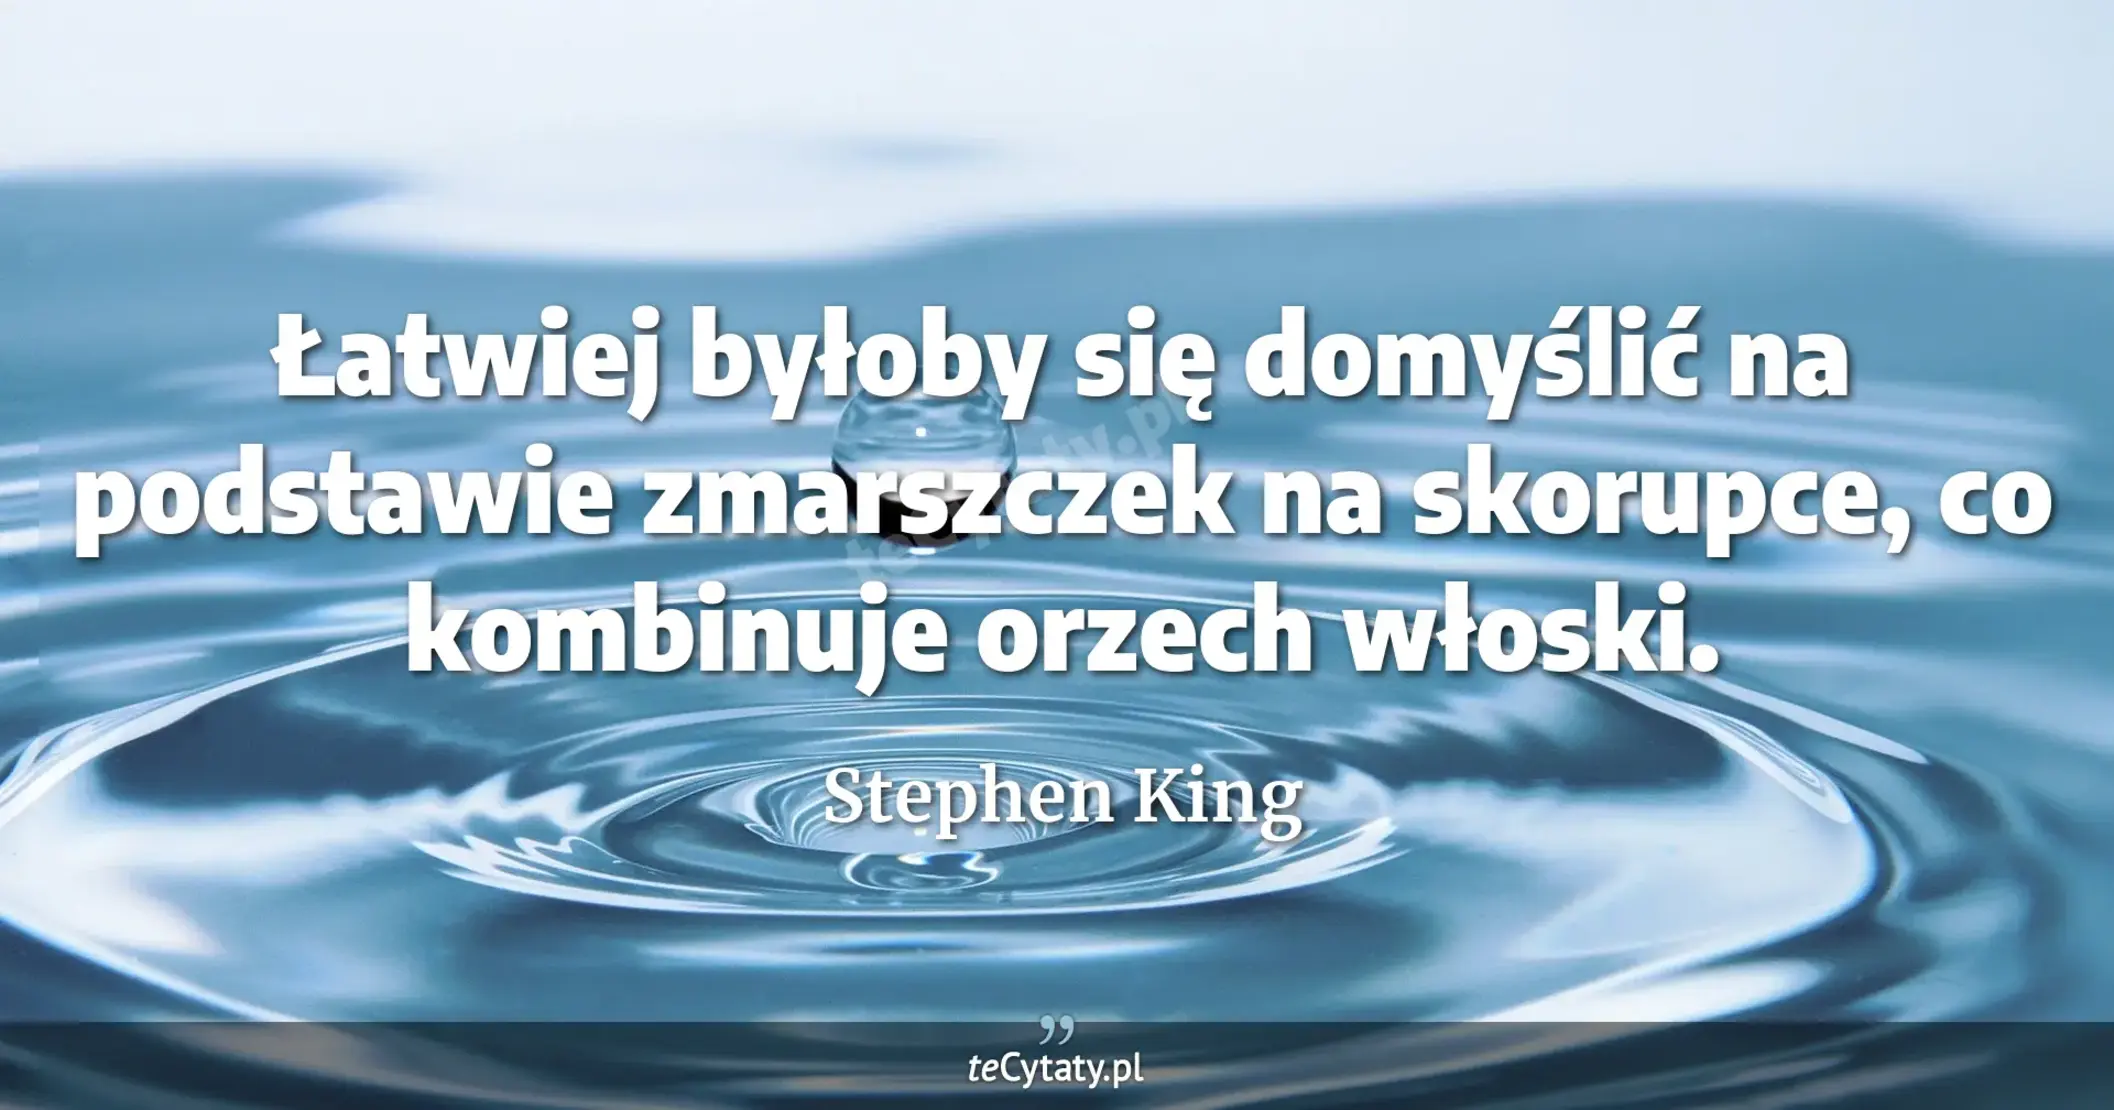 Łatwiej byłoby się domyślić na podstawie zmarszczek na skorupce, co kombinuje orzech włoski. - Stephen King